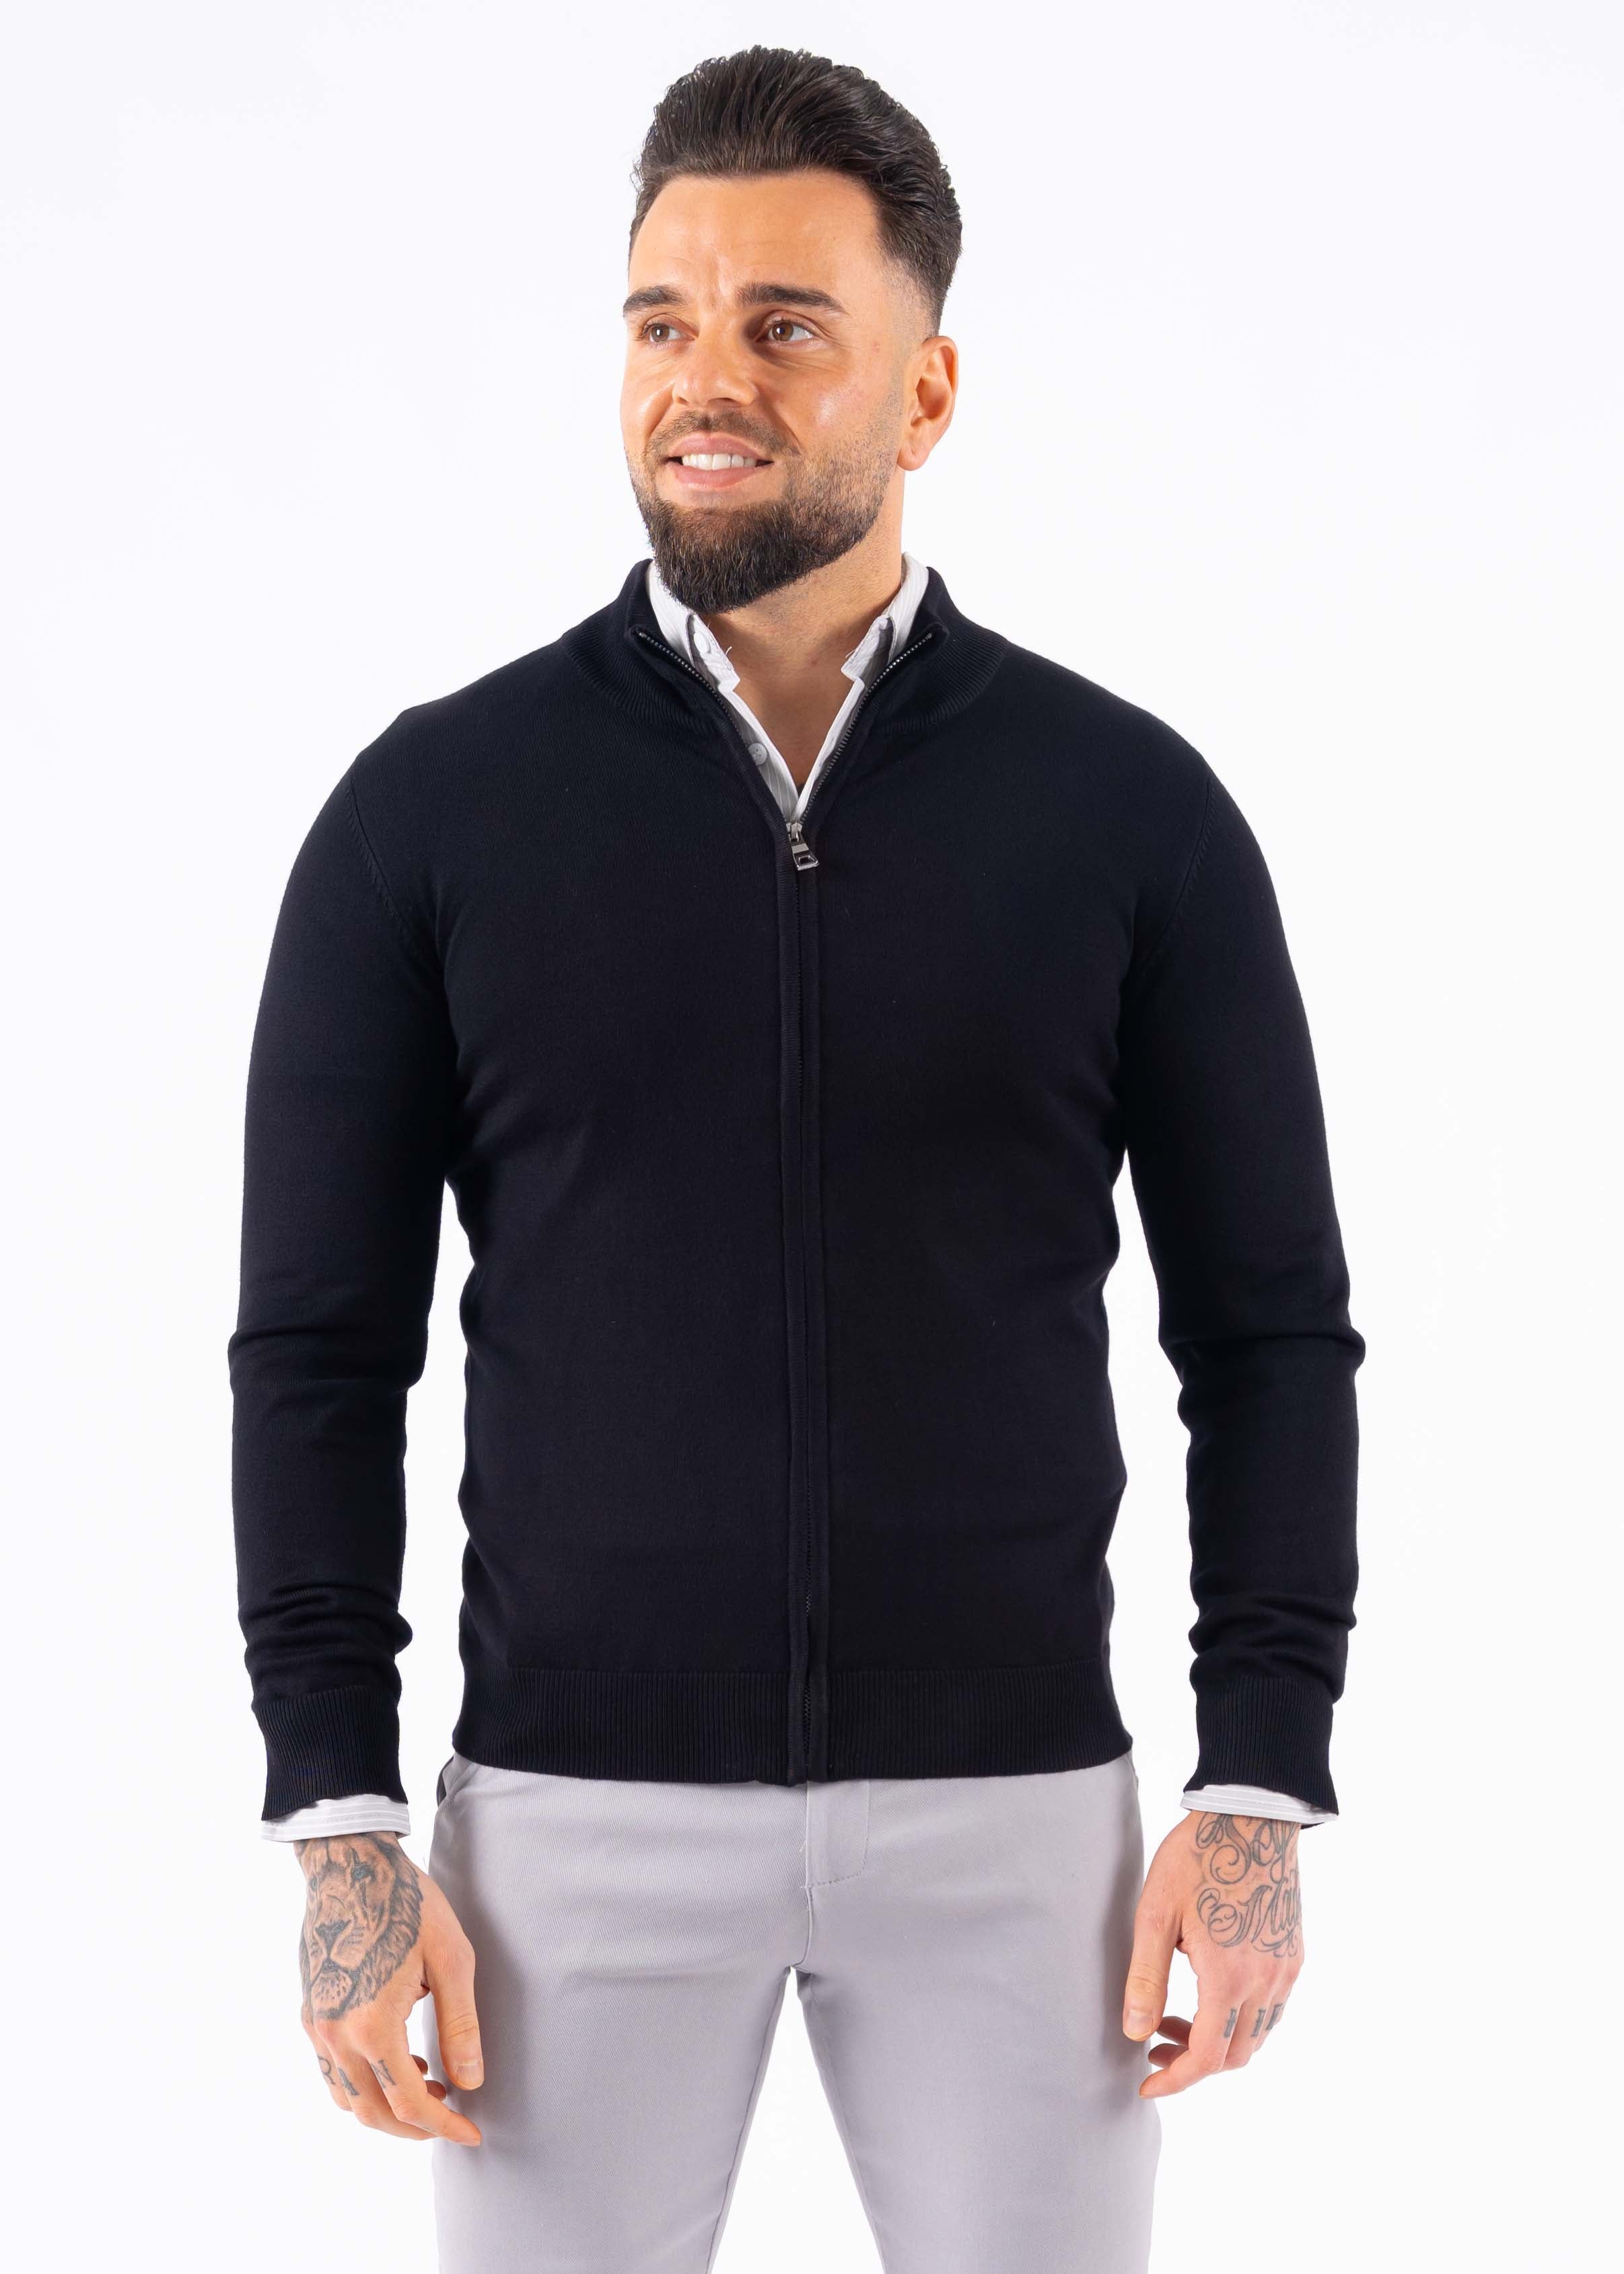 Vest zipper knitwear black